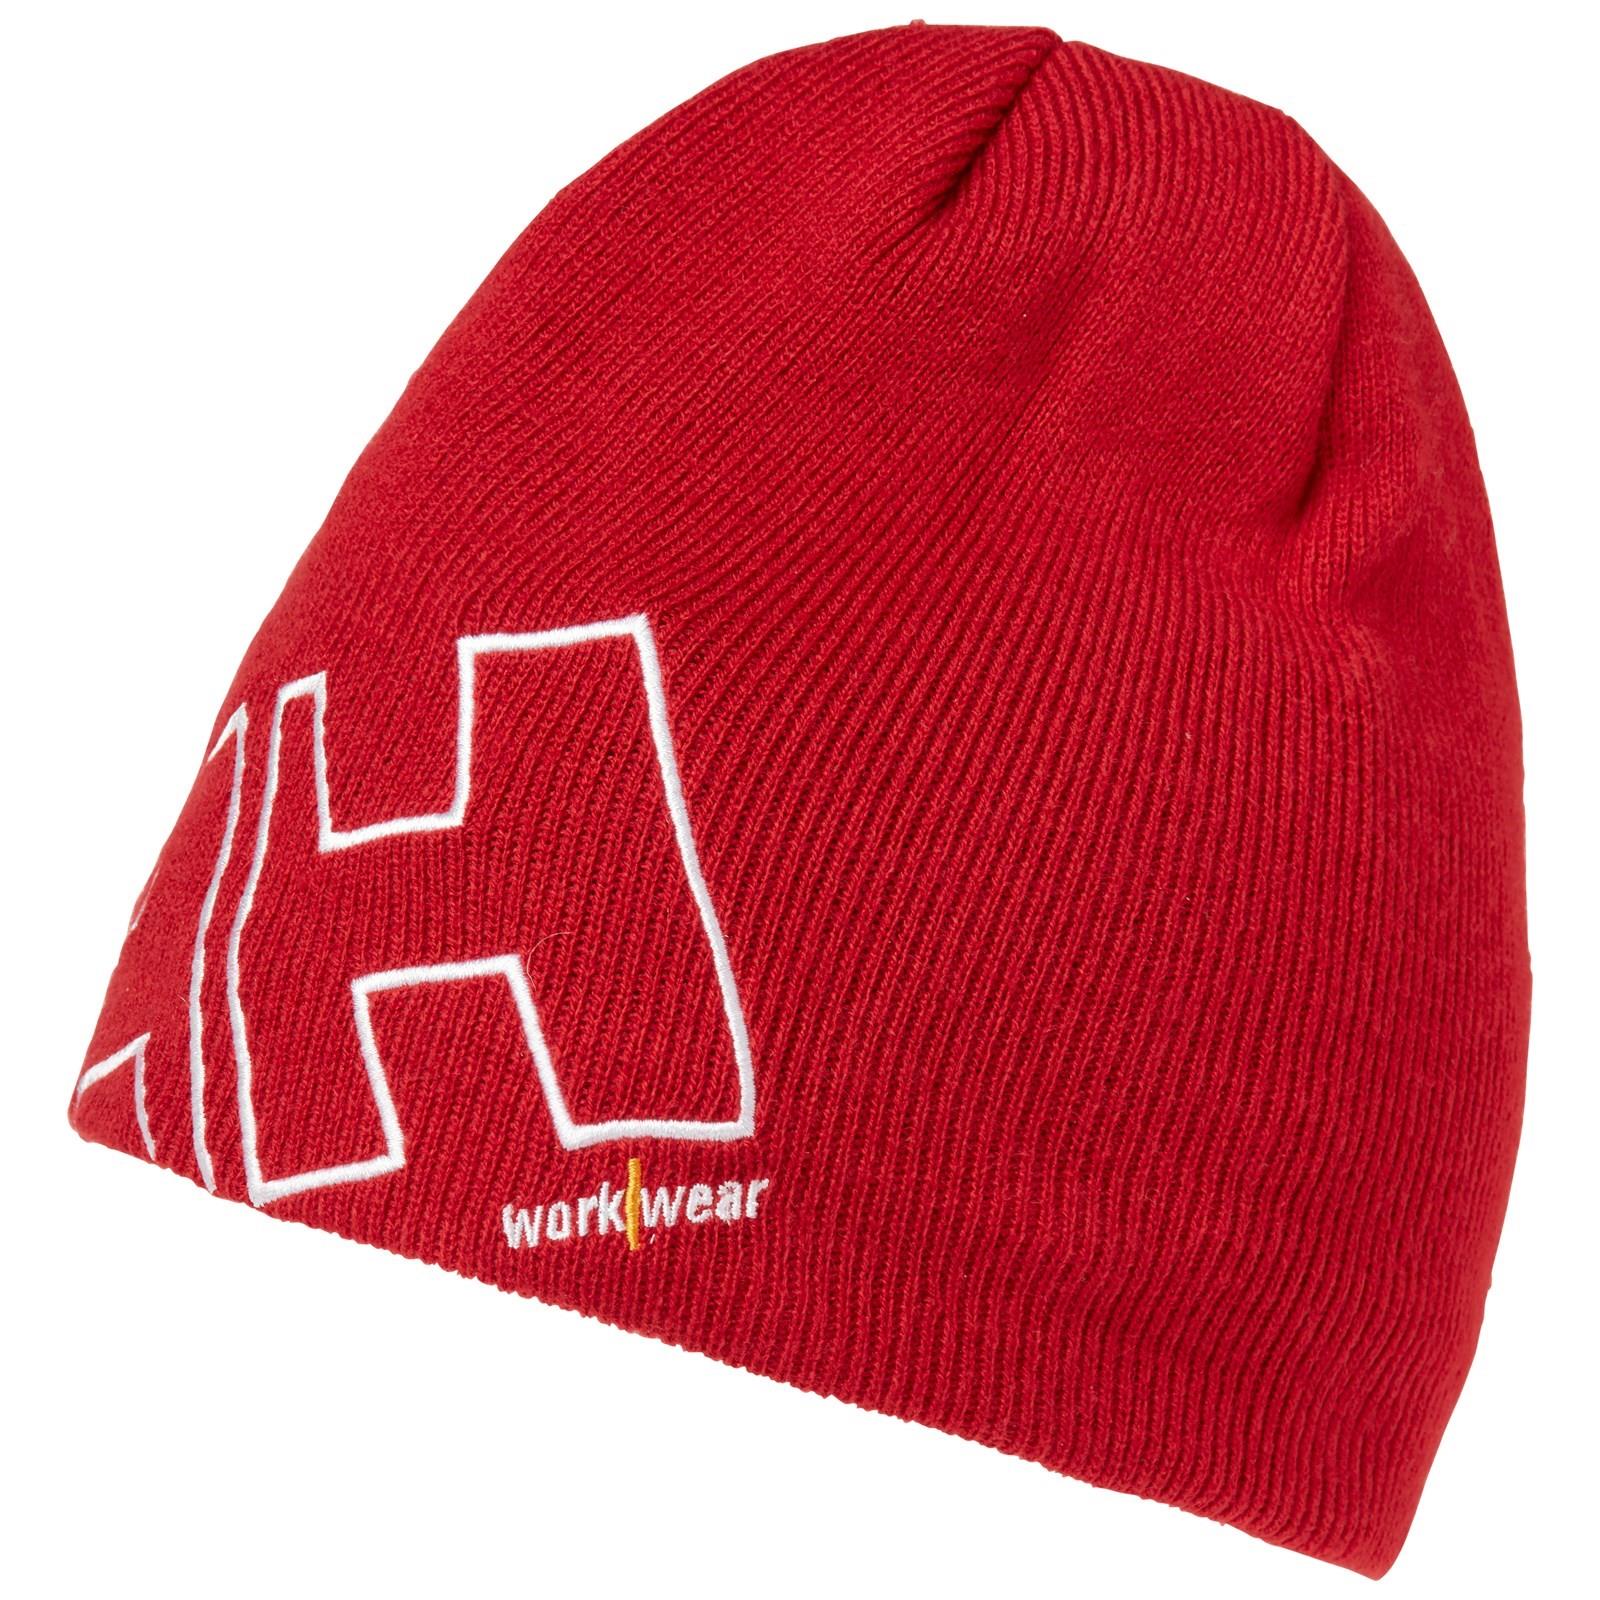 Helly Hansen red knitted workwear beanie hat #79830